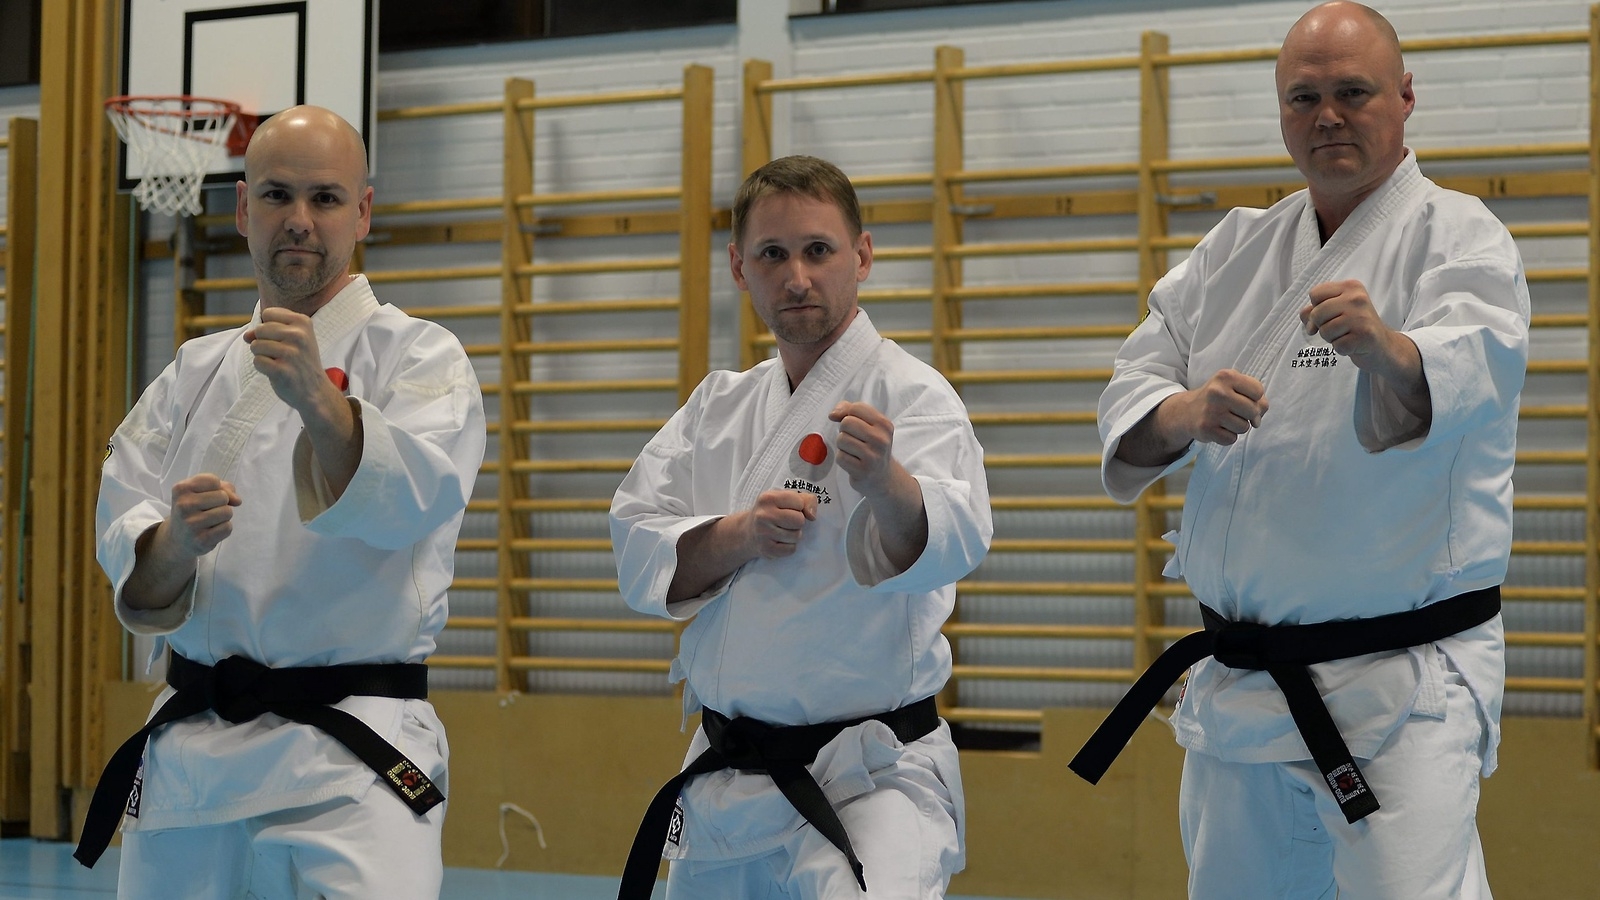 Hässleholms Karateklubbs trio Peter Regebro, Lasse Nilsson och Robert Svensson har samtliga graderat till svart bälte i karate. De gjorde det i Malmö inför sportens  kunnigaste experter. Foto: Jan Rydén